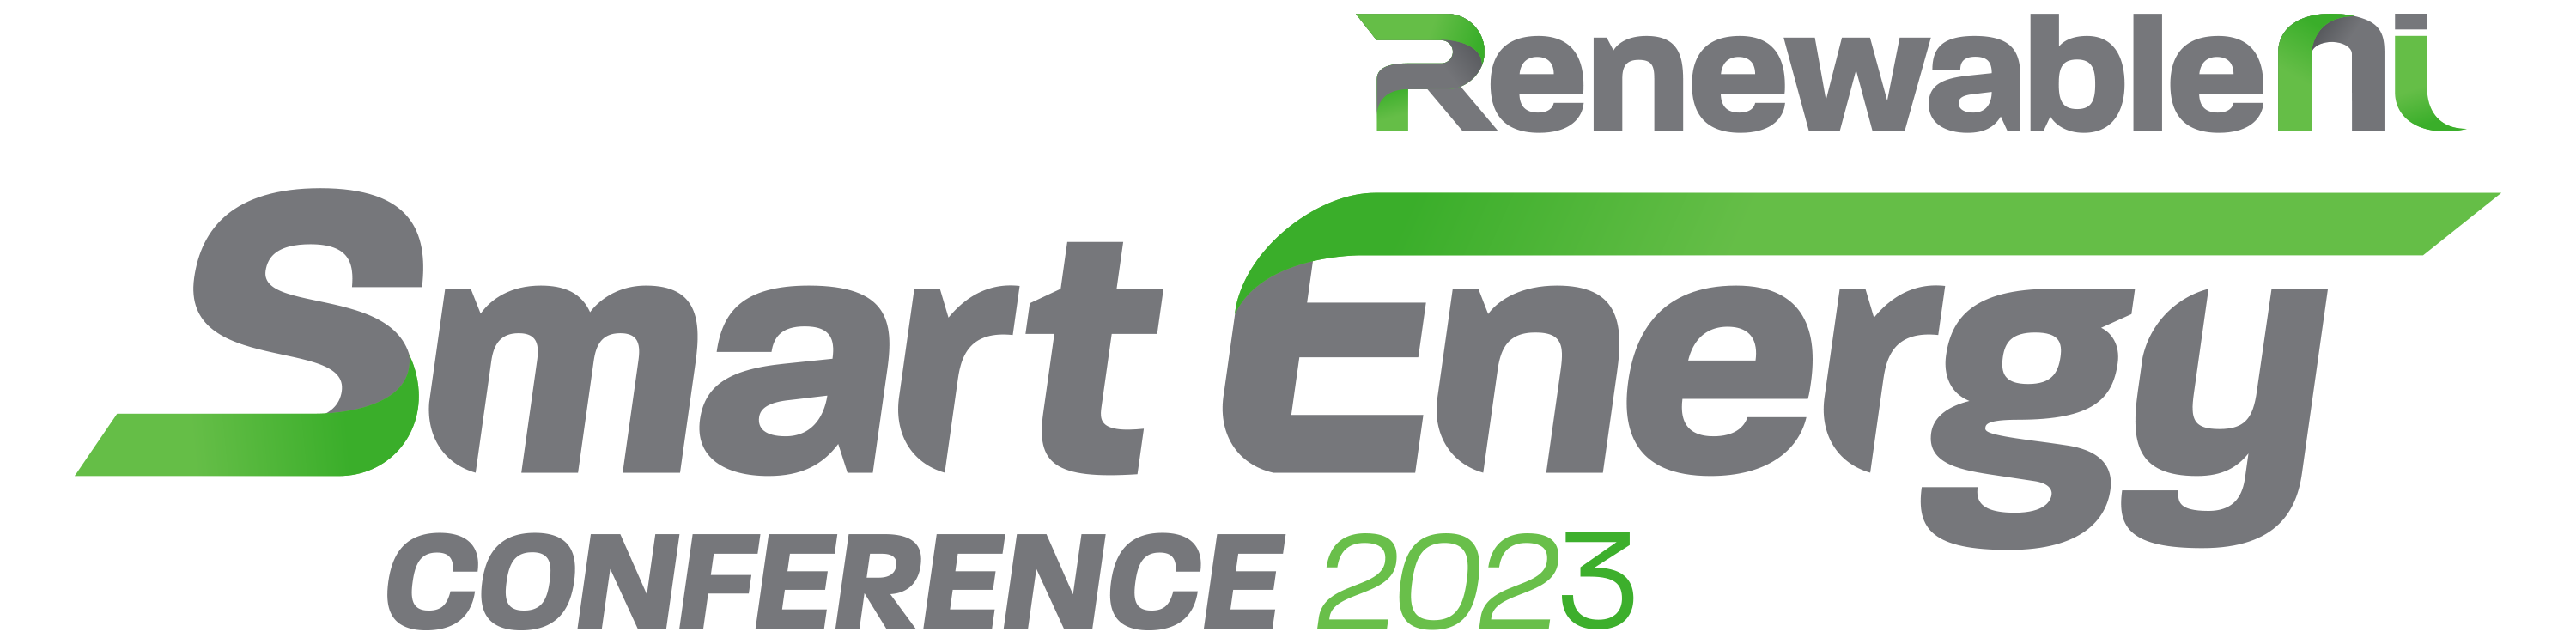 Smart energy 2023 logo